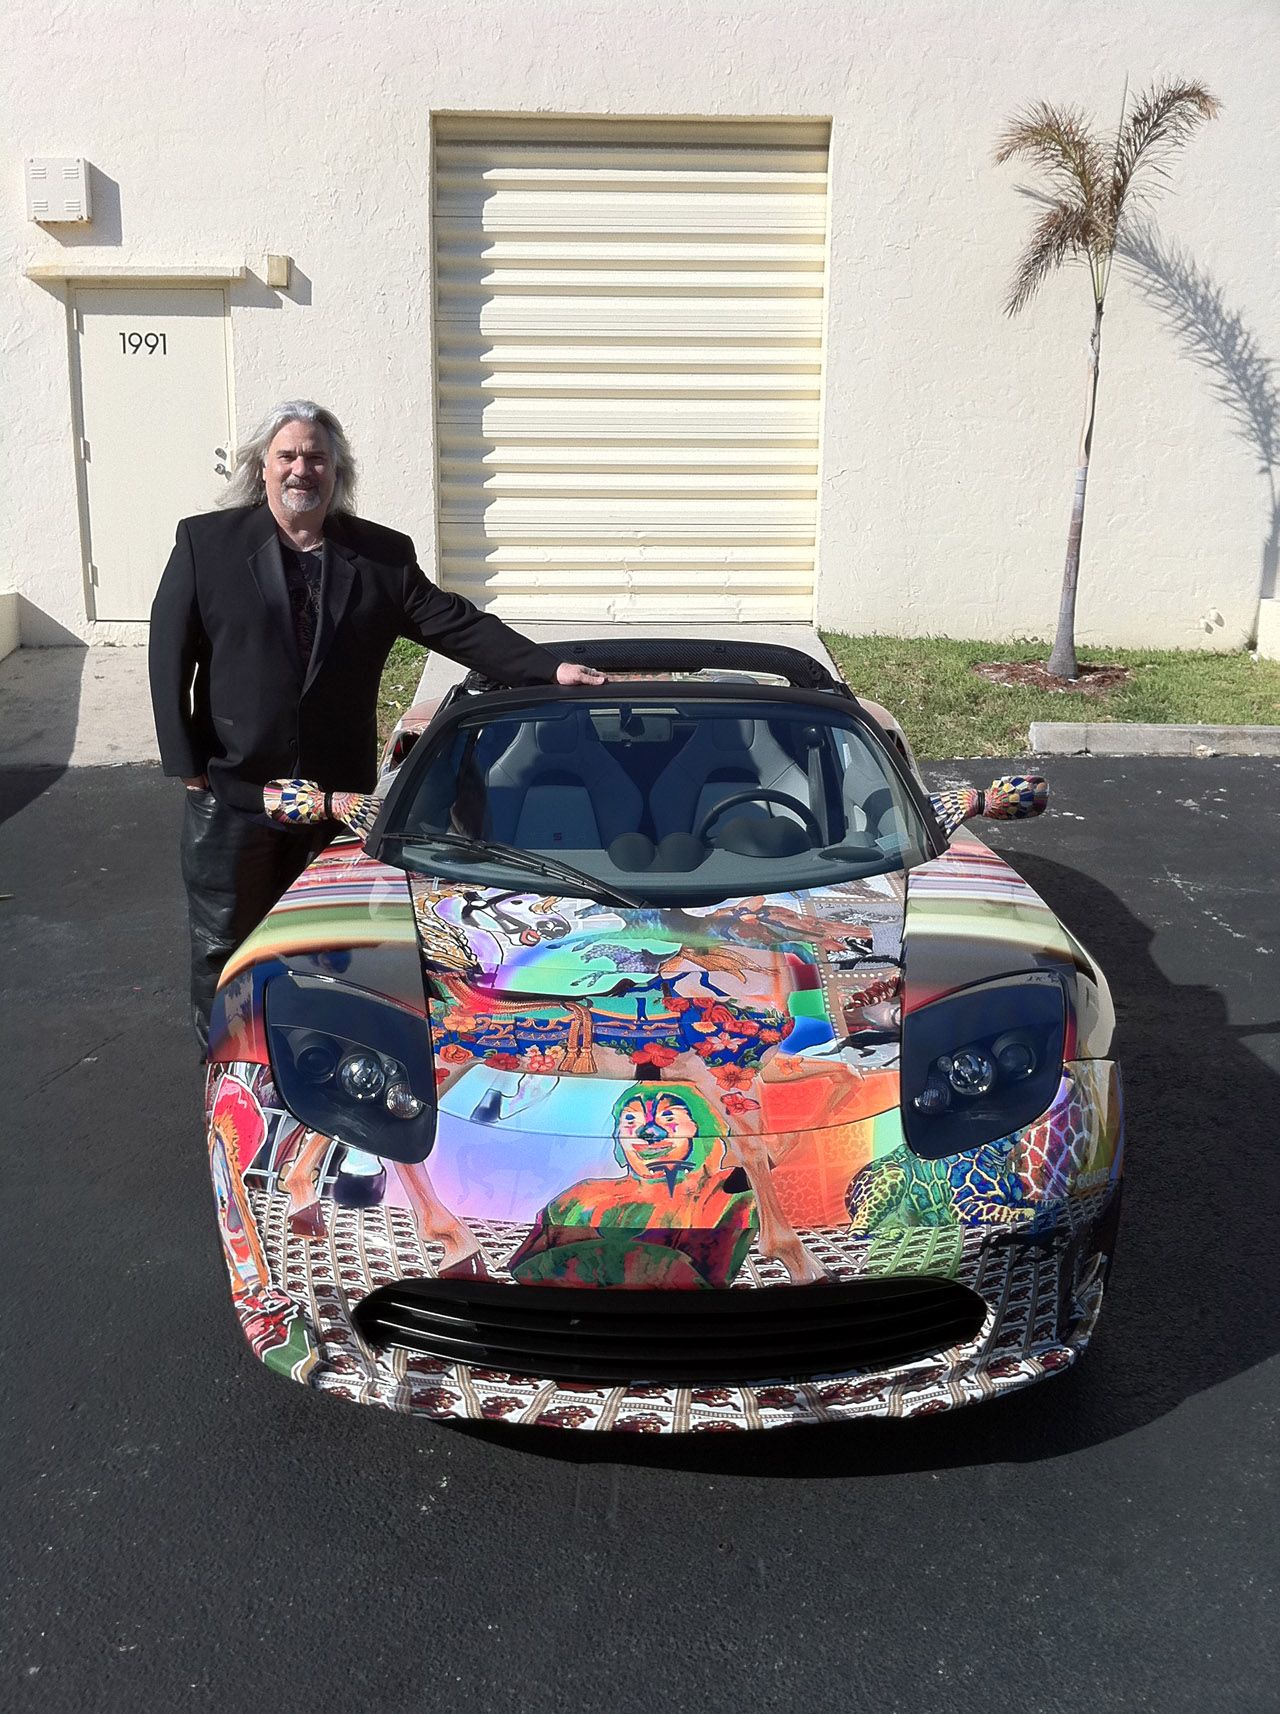 2011 Tesla Roadster Art Car by Laurence Gartel